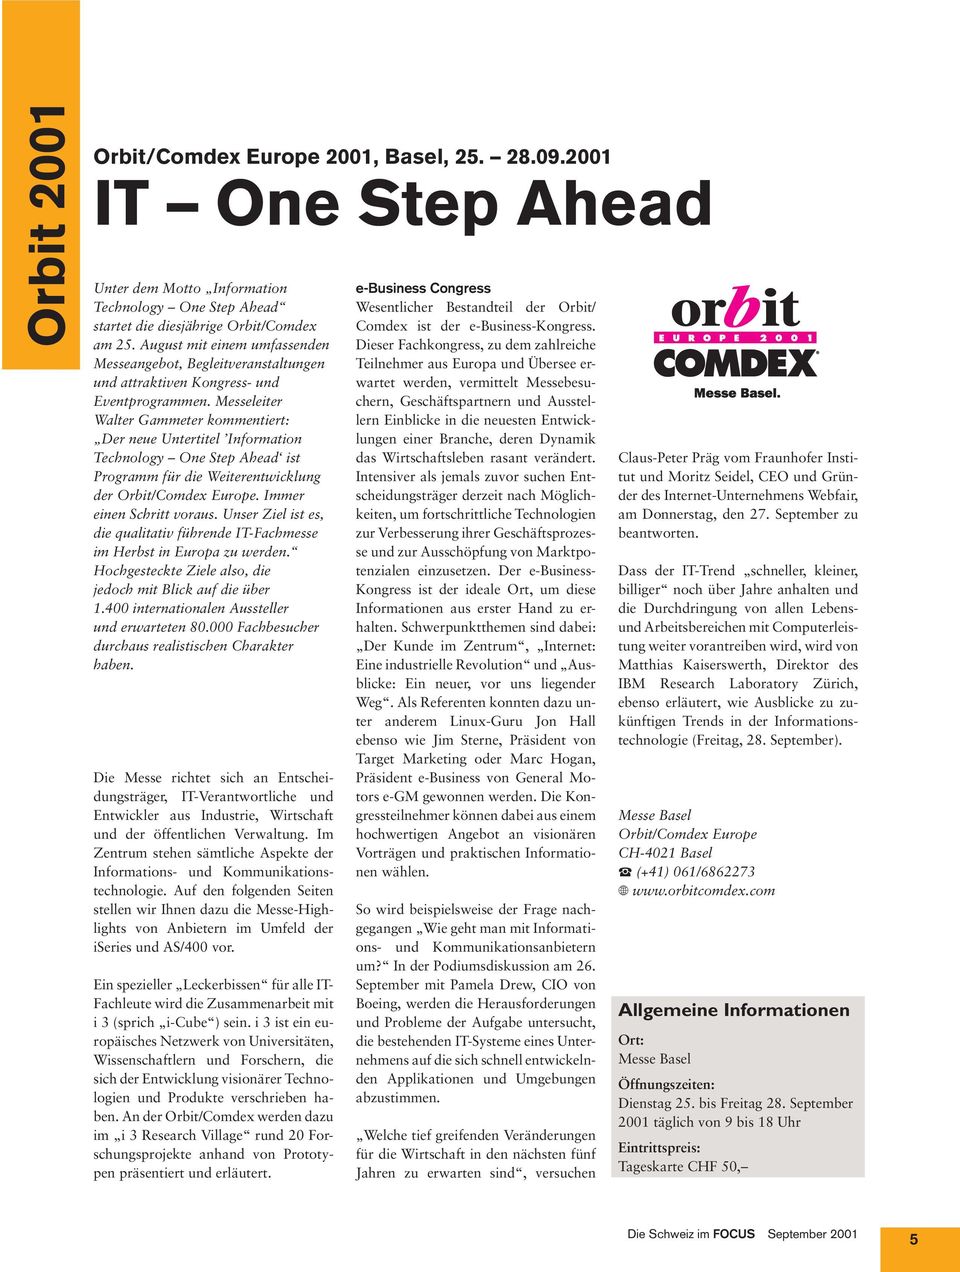 Messeleiter Walter Gammeter kommentiert: Der neue Untertitel Information Technology One Step Ahead ist Programm für die Weiterentwicklung der Orbit/Comdex Europe. Immer einen Schritt voraus.